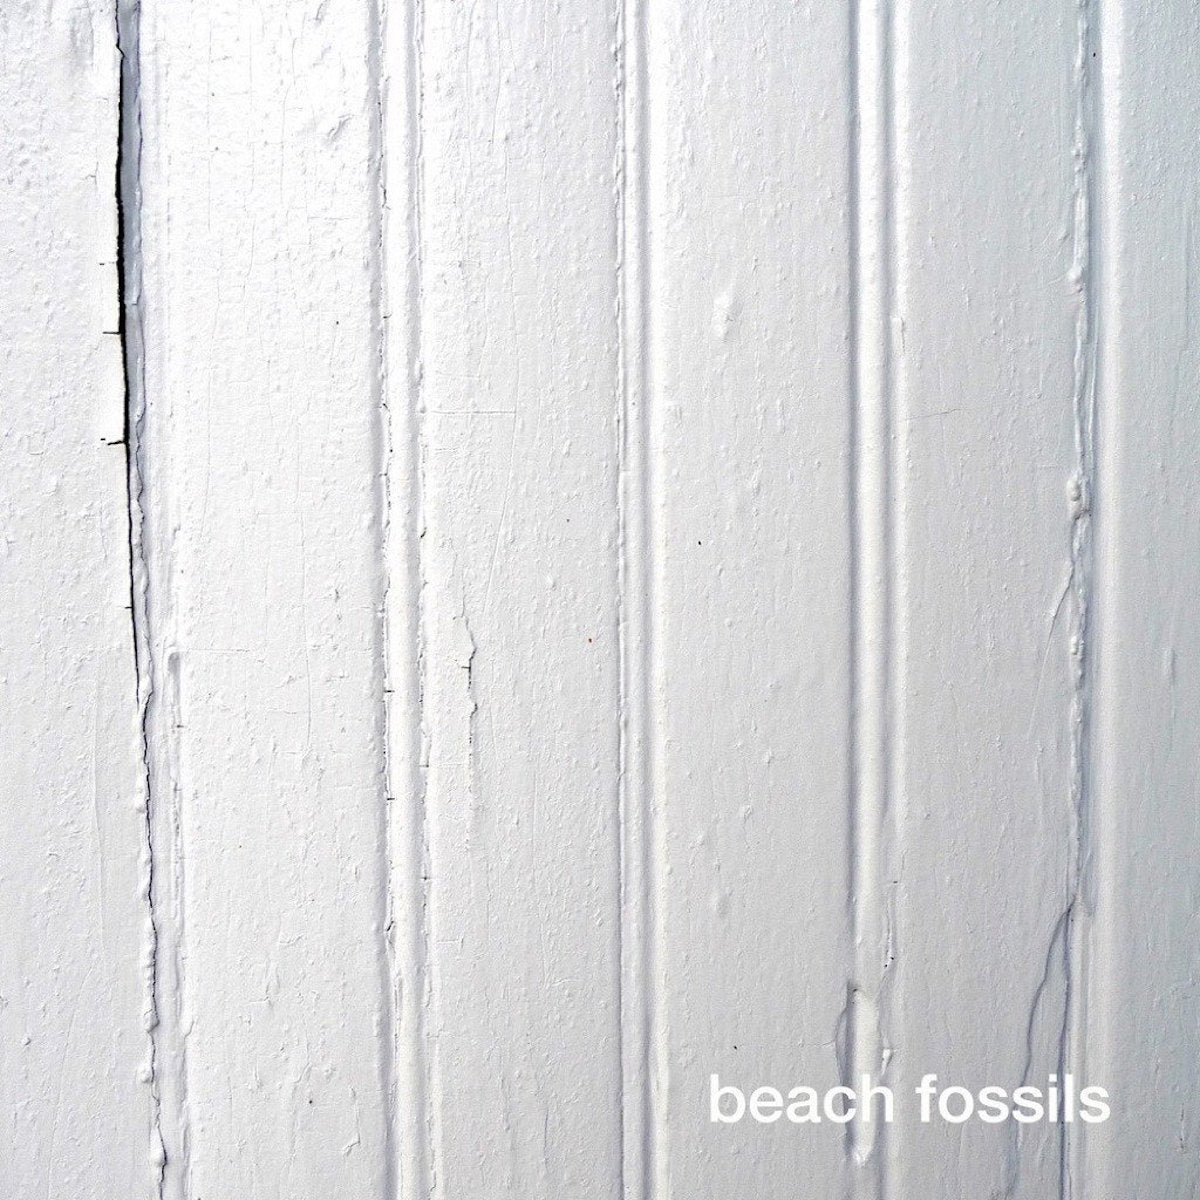 BEACH FOSSILS "BEACH FOSSILS"